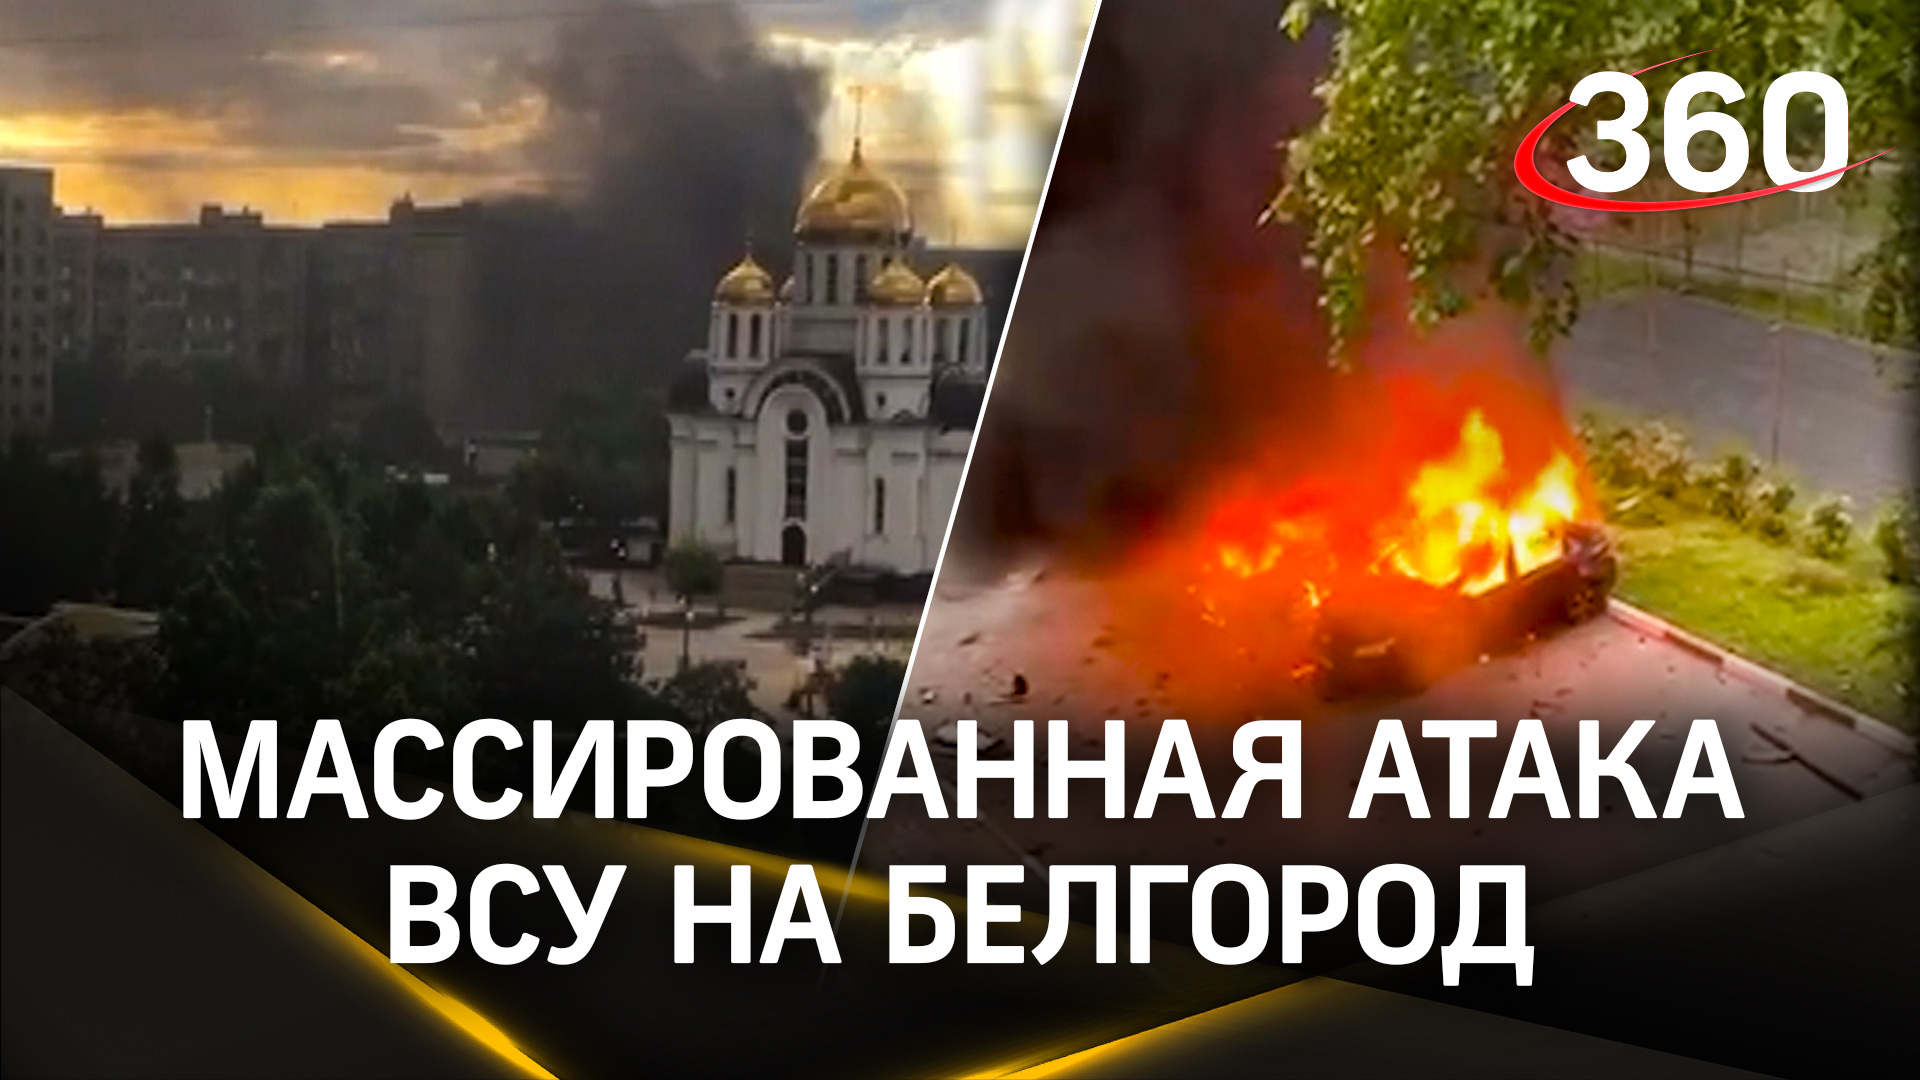 Артиллерийский хаос в Белгороде: ВСУ нанесли массированный удар по спальным районам